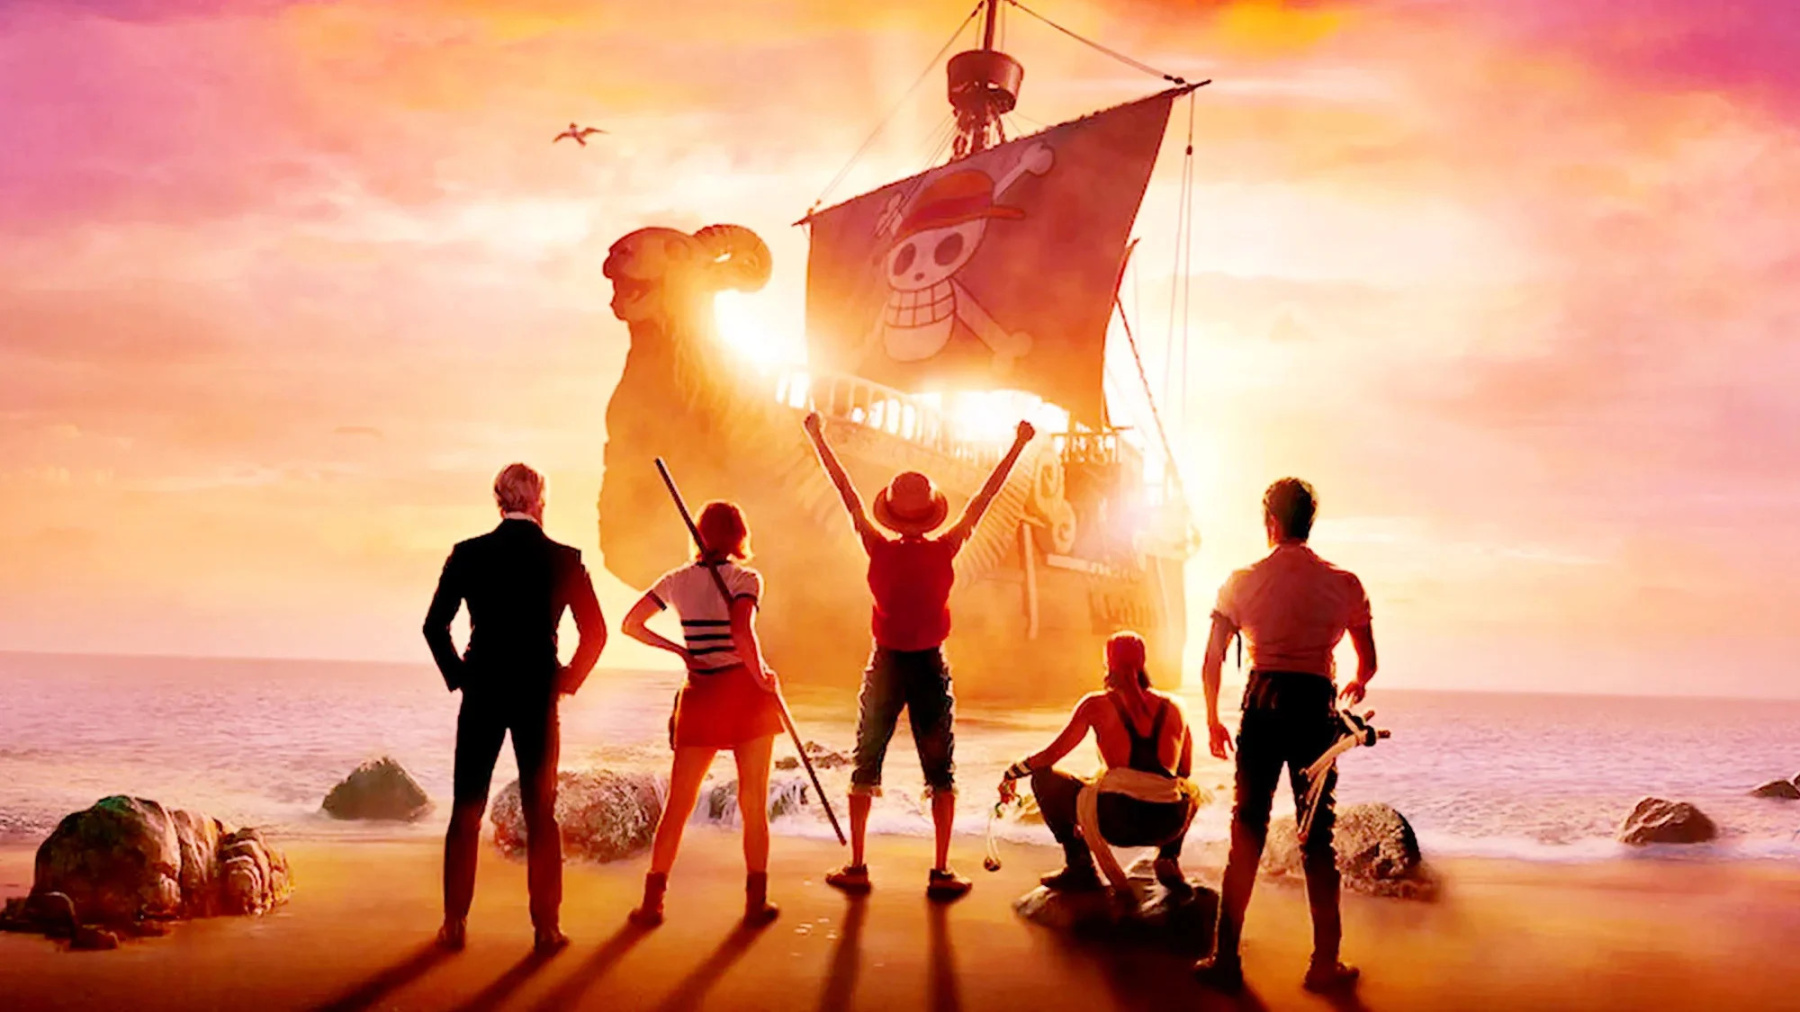 《海贼王》真人版第二季2025年播出 今年6月正式开拍  第2张